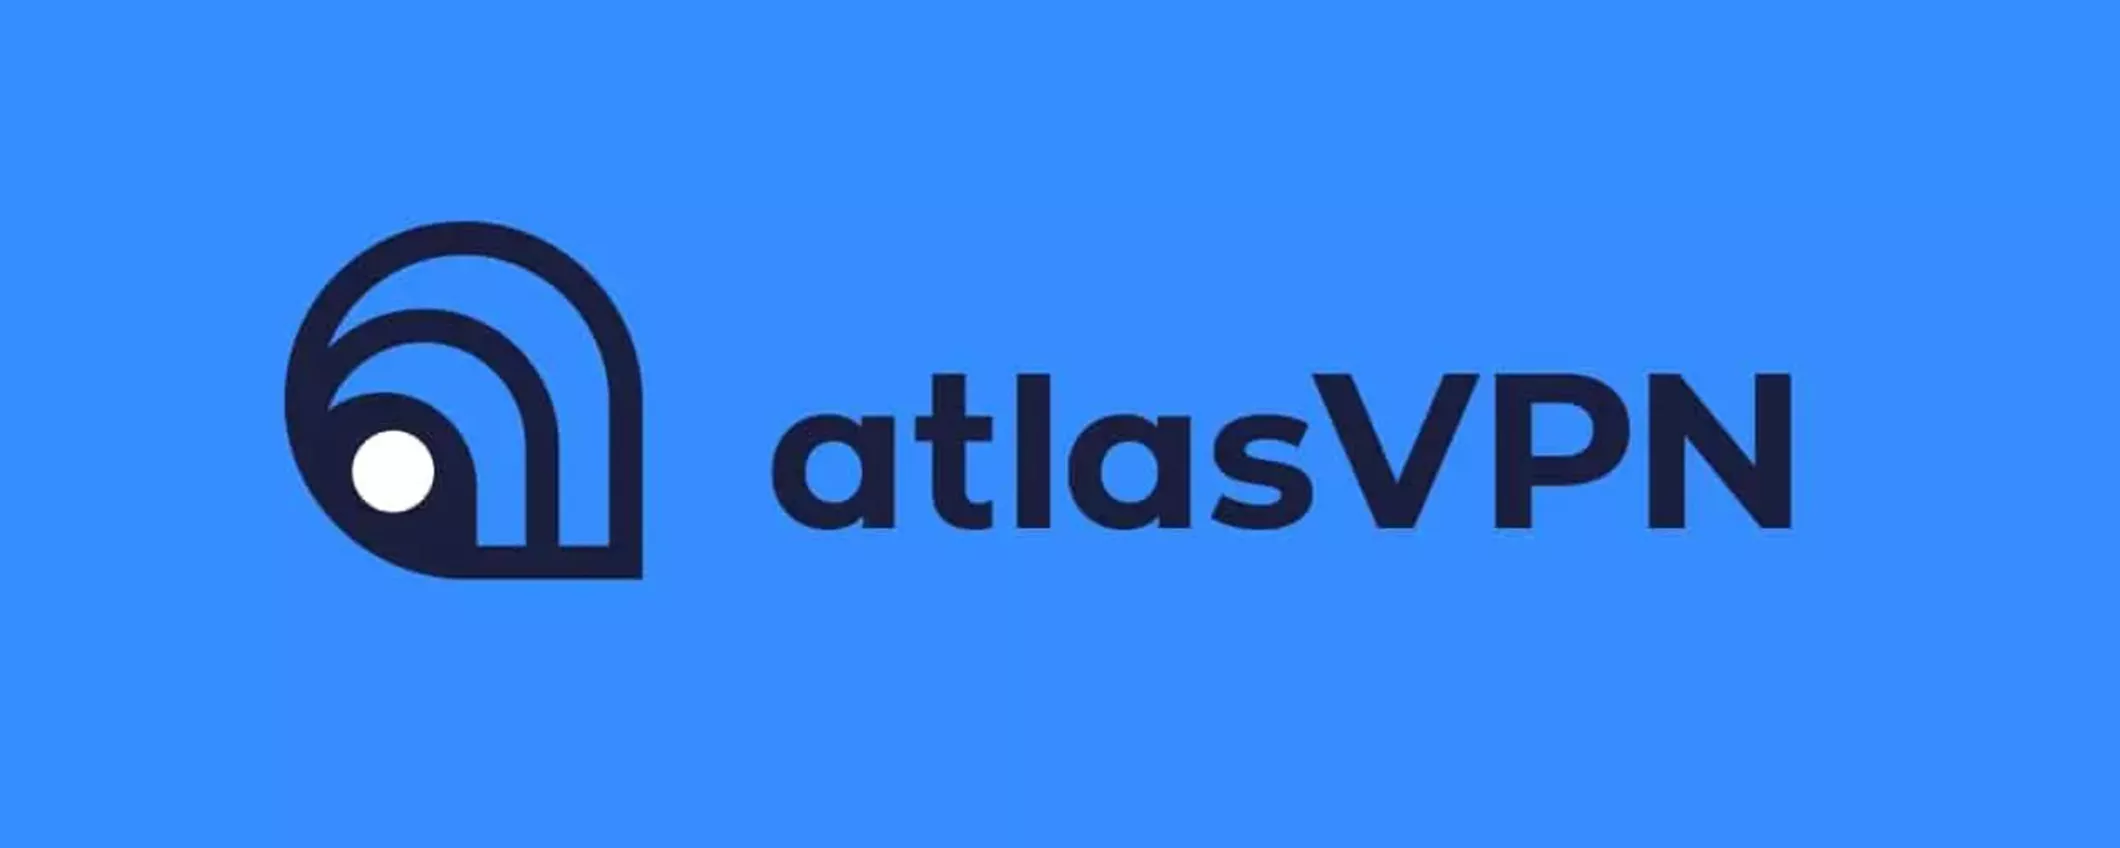 Il Black Friday di Atlas VPN porta in dote 6 mesi extra gratis